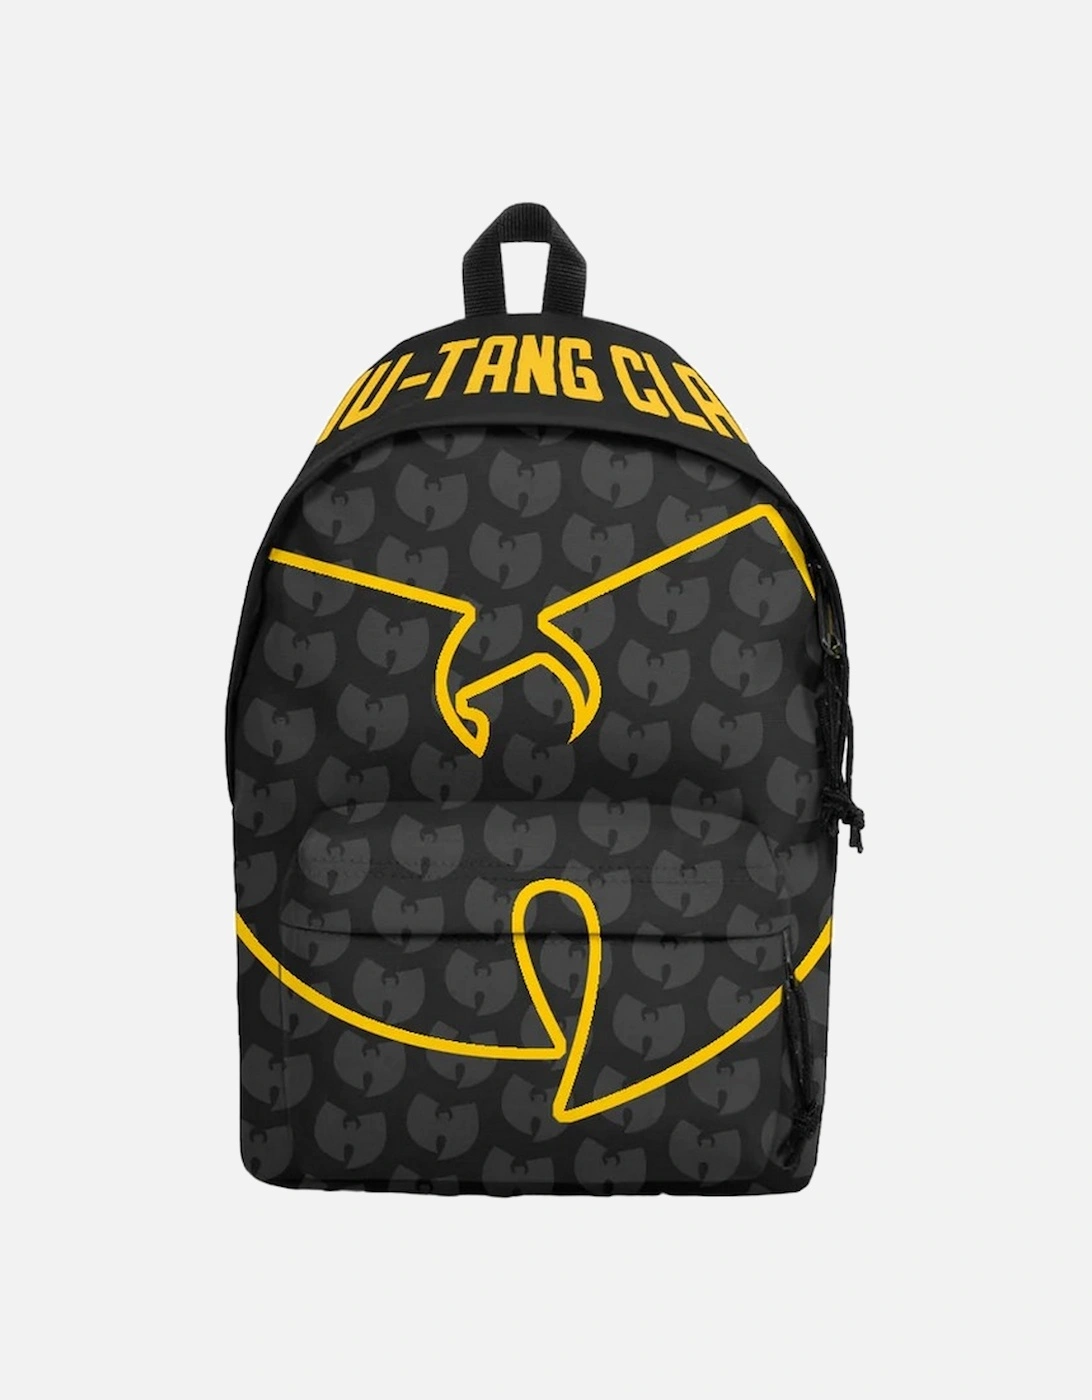 Bring Da Ruckus Wu-Tang Clan Backpack, 2 of 1